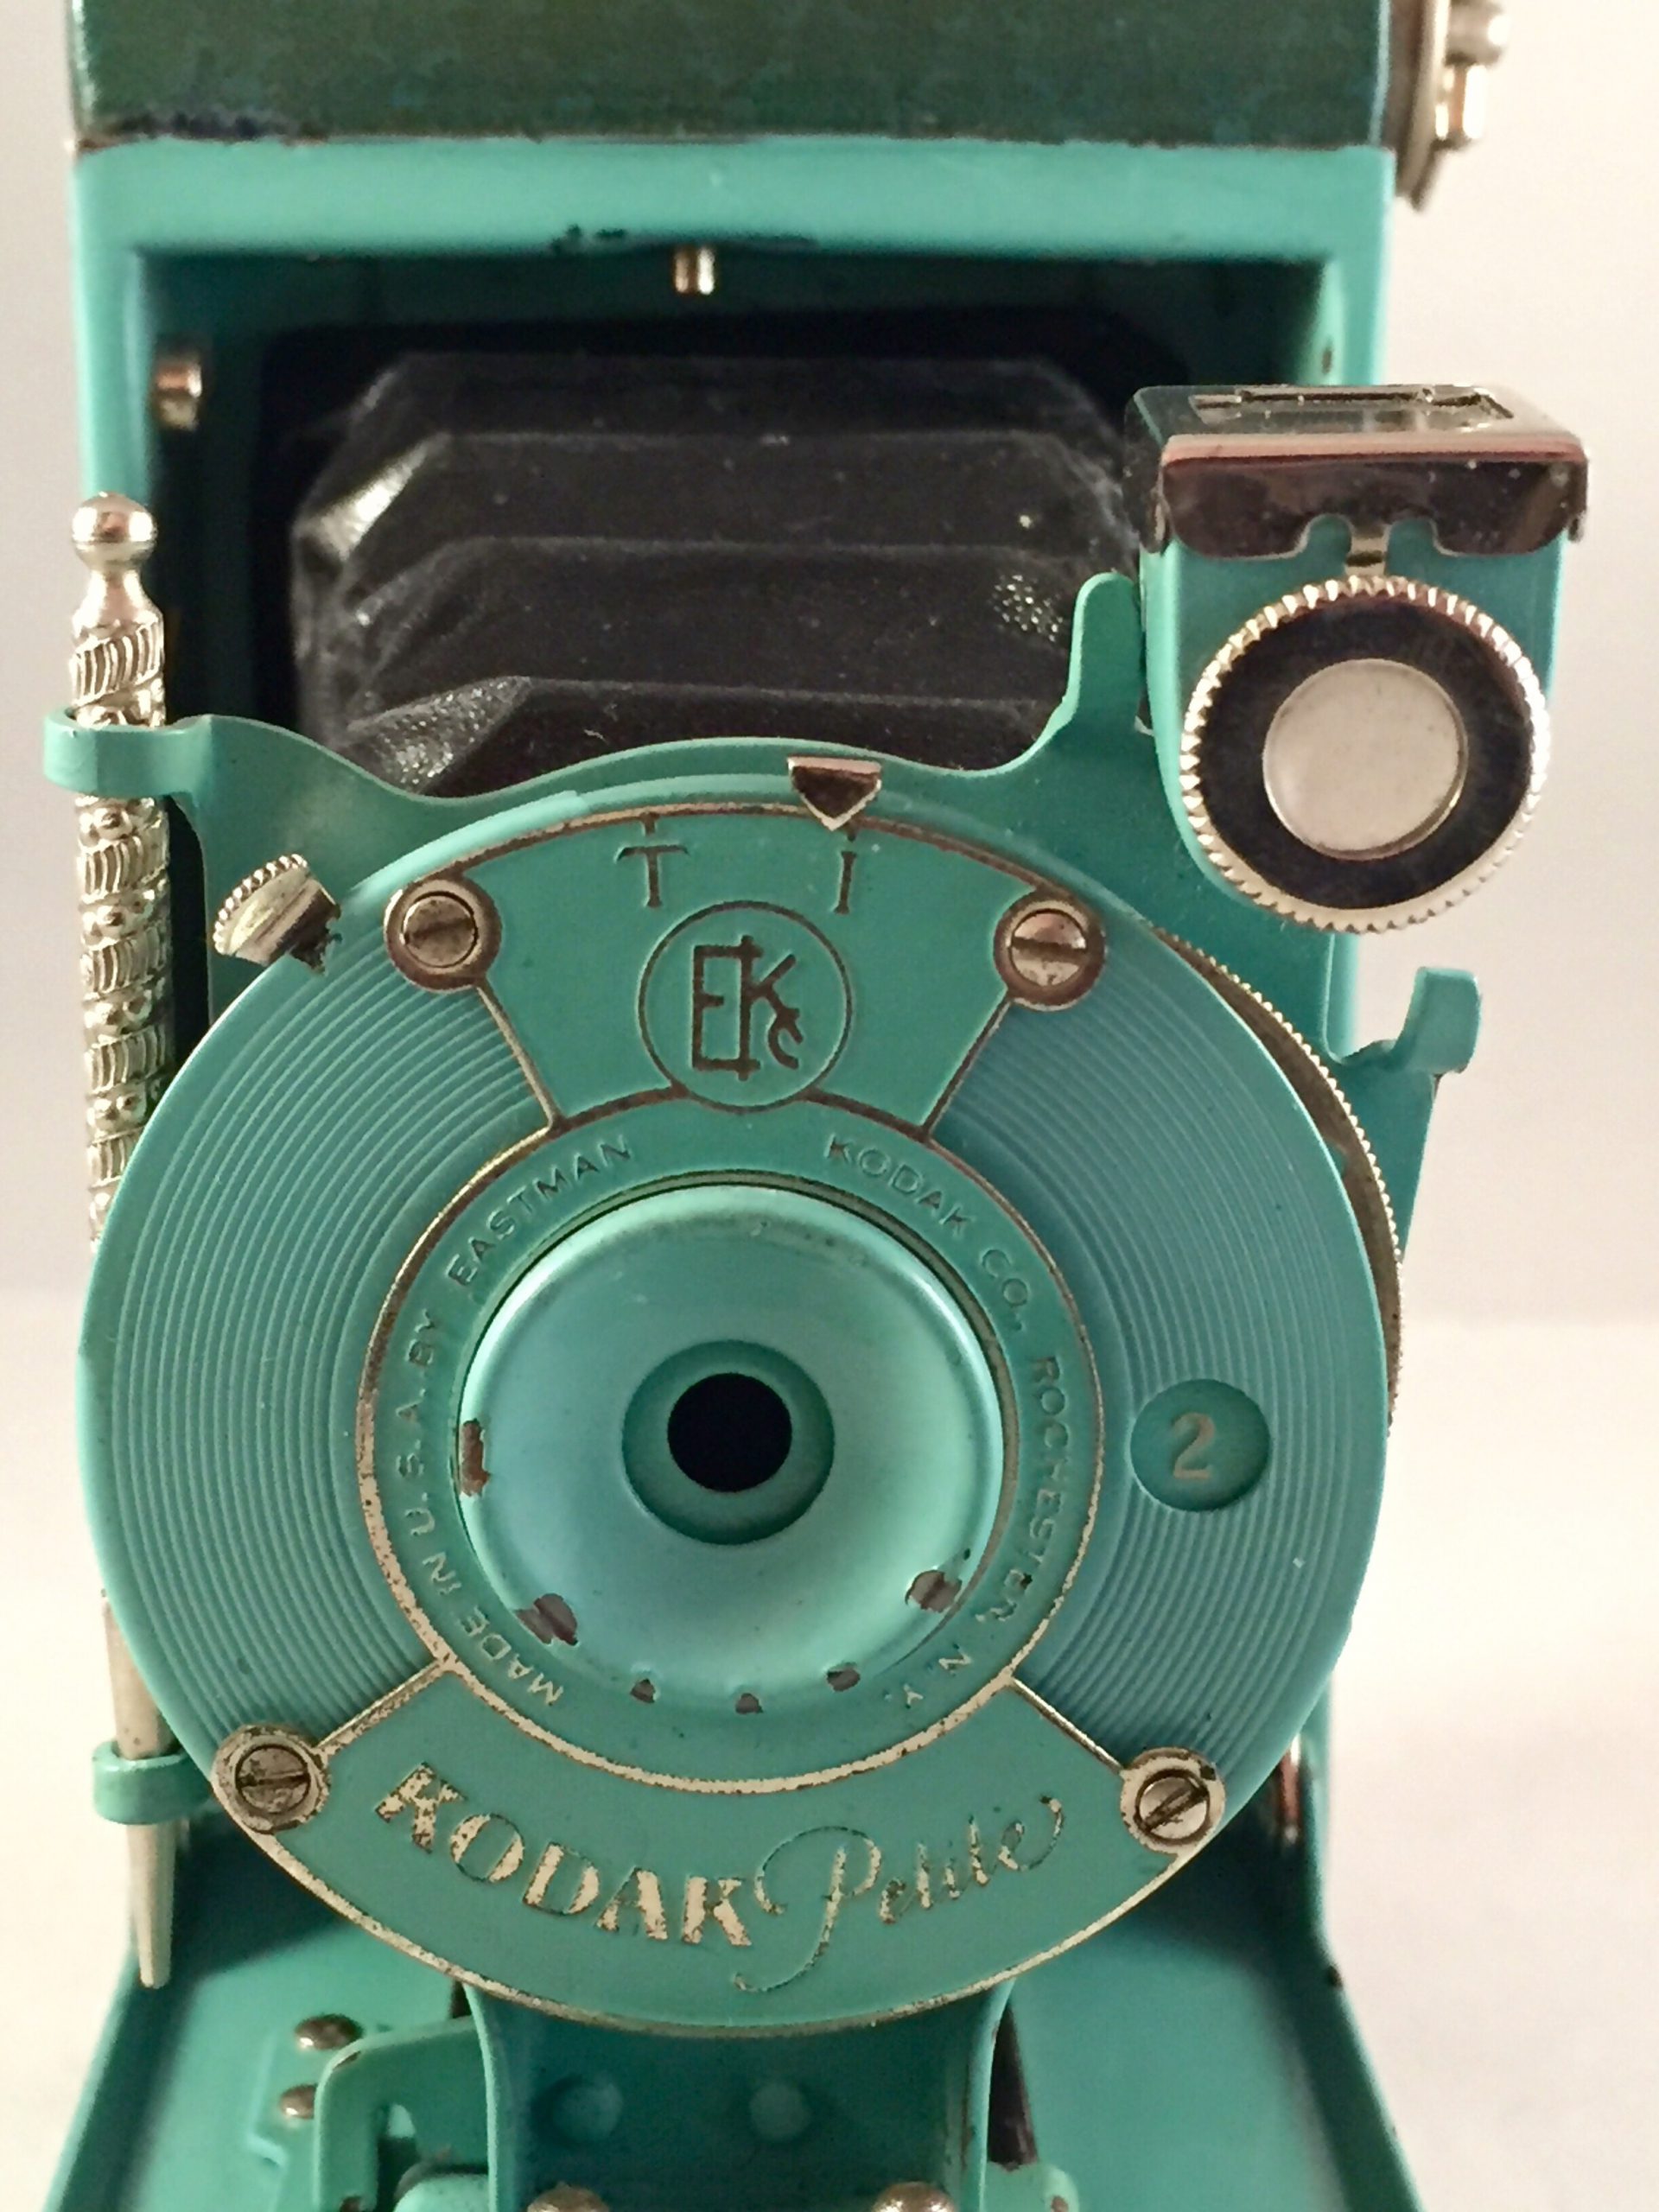 Kodak Petite